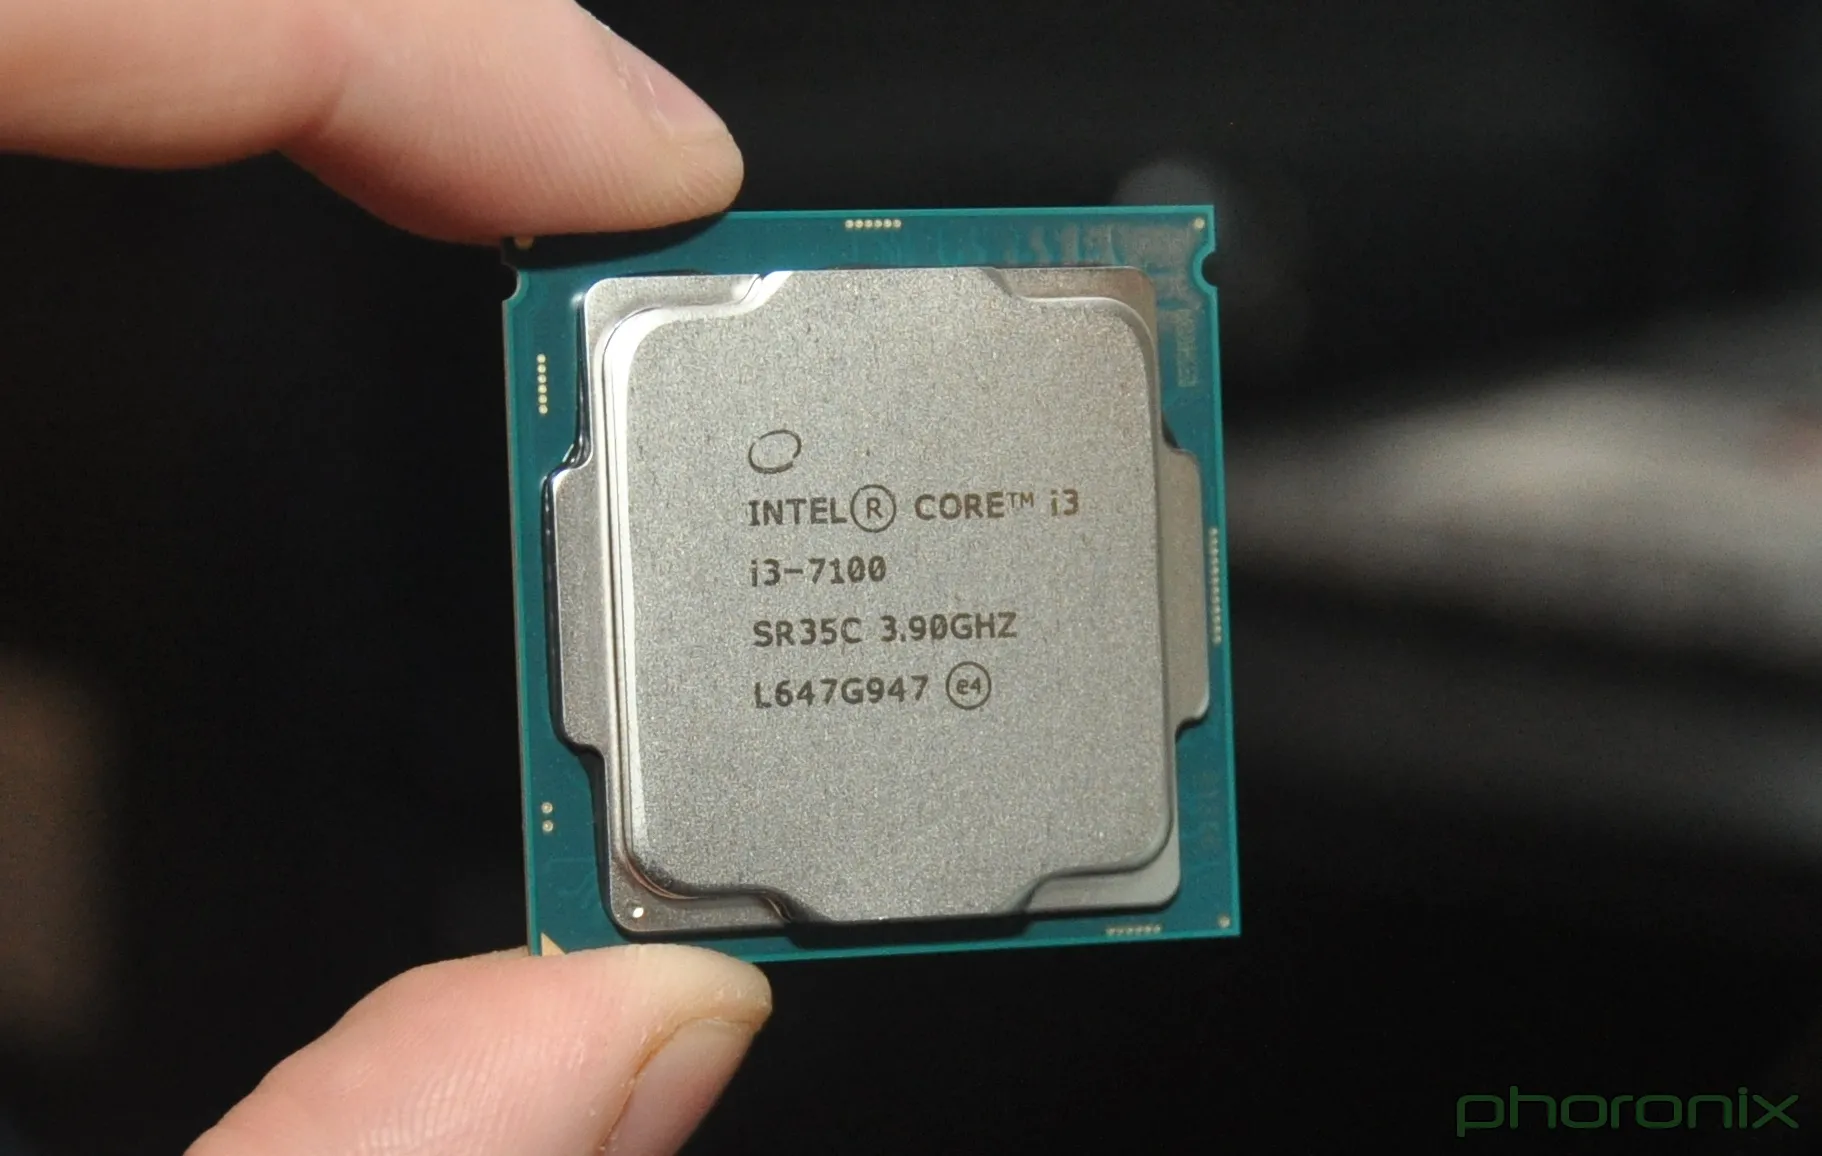 Интел 7100. Core i3 2100 сокет. Intel Core i3-7100. Процессор Intel 7100. Intel Core i3 7100 CPU.